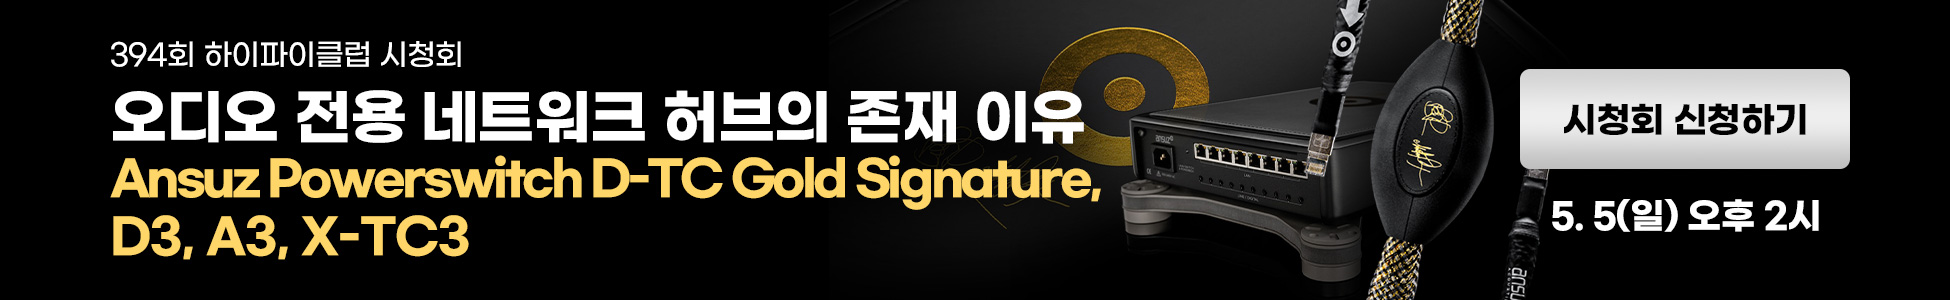 Ansuz PowerSwitch D-TC Gold Signature, D3, A3, X-TC3